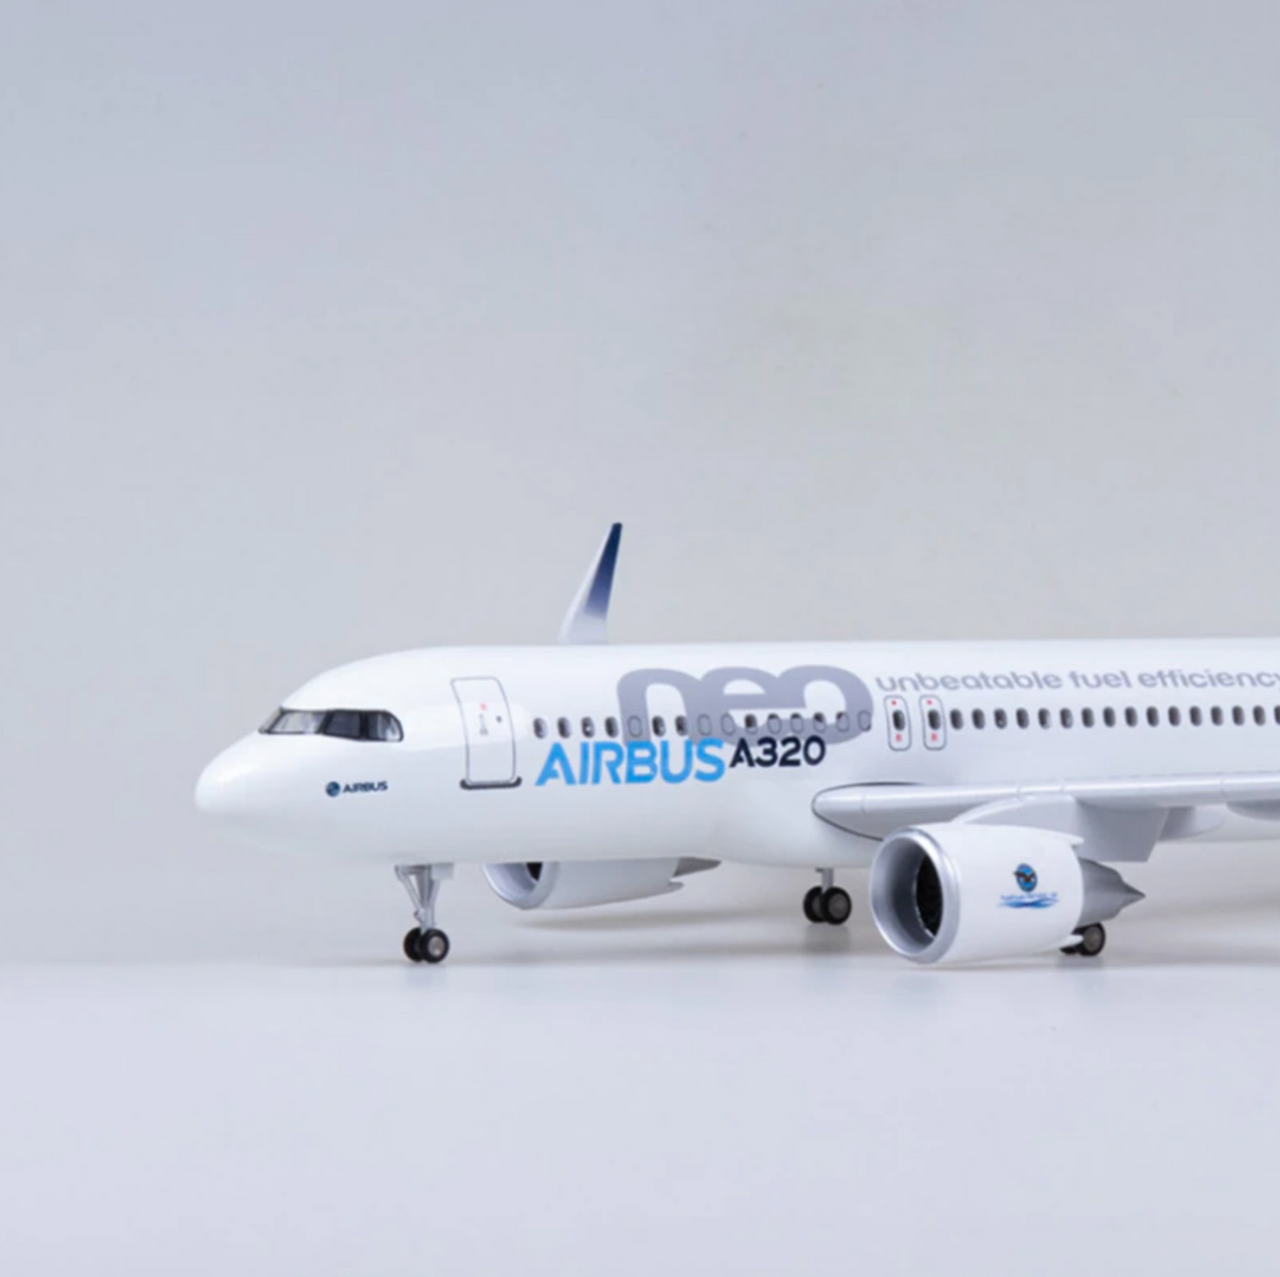 Airbus A320Neo Original Livery Airplane Model (47CM)